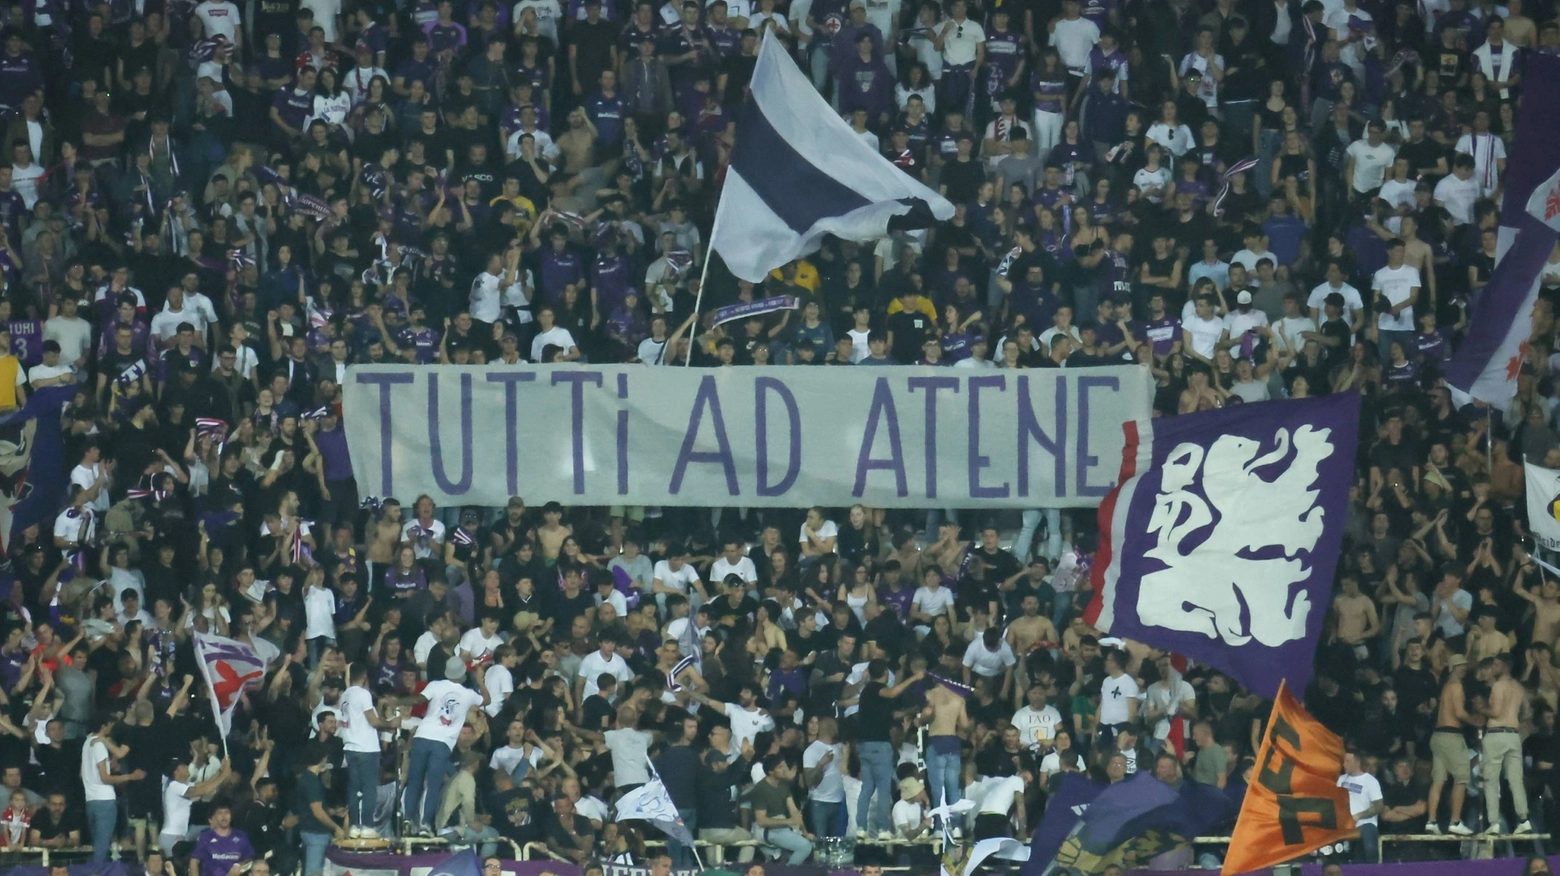 I tifosi della Fiorentina si muovono per la trasferta dell'anno ad Atene, anche se le difficoltà negli spostamenti non mancano. Intanto si va verso il pienone venerdì sera contro il Napoli